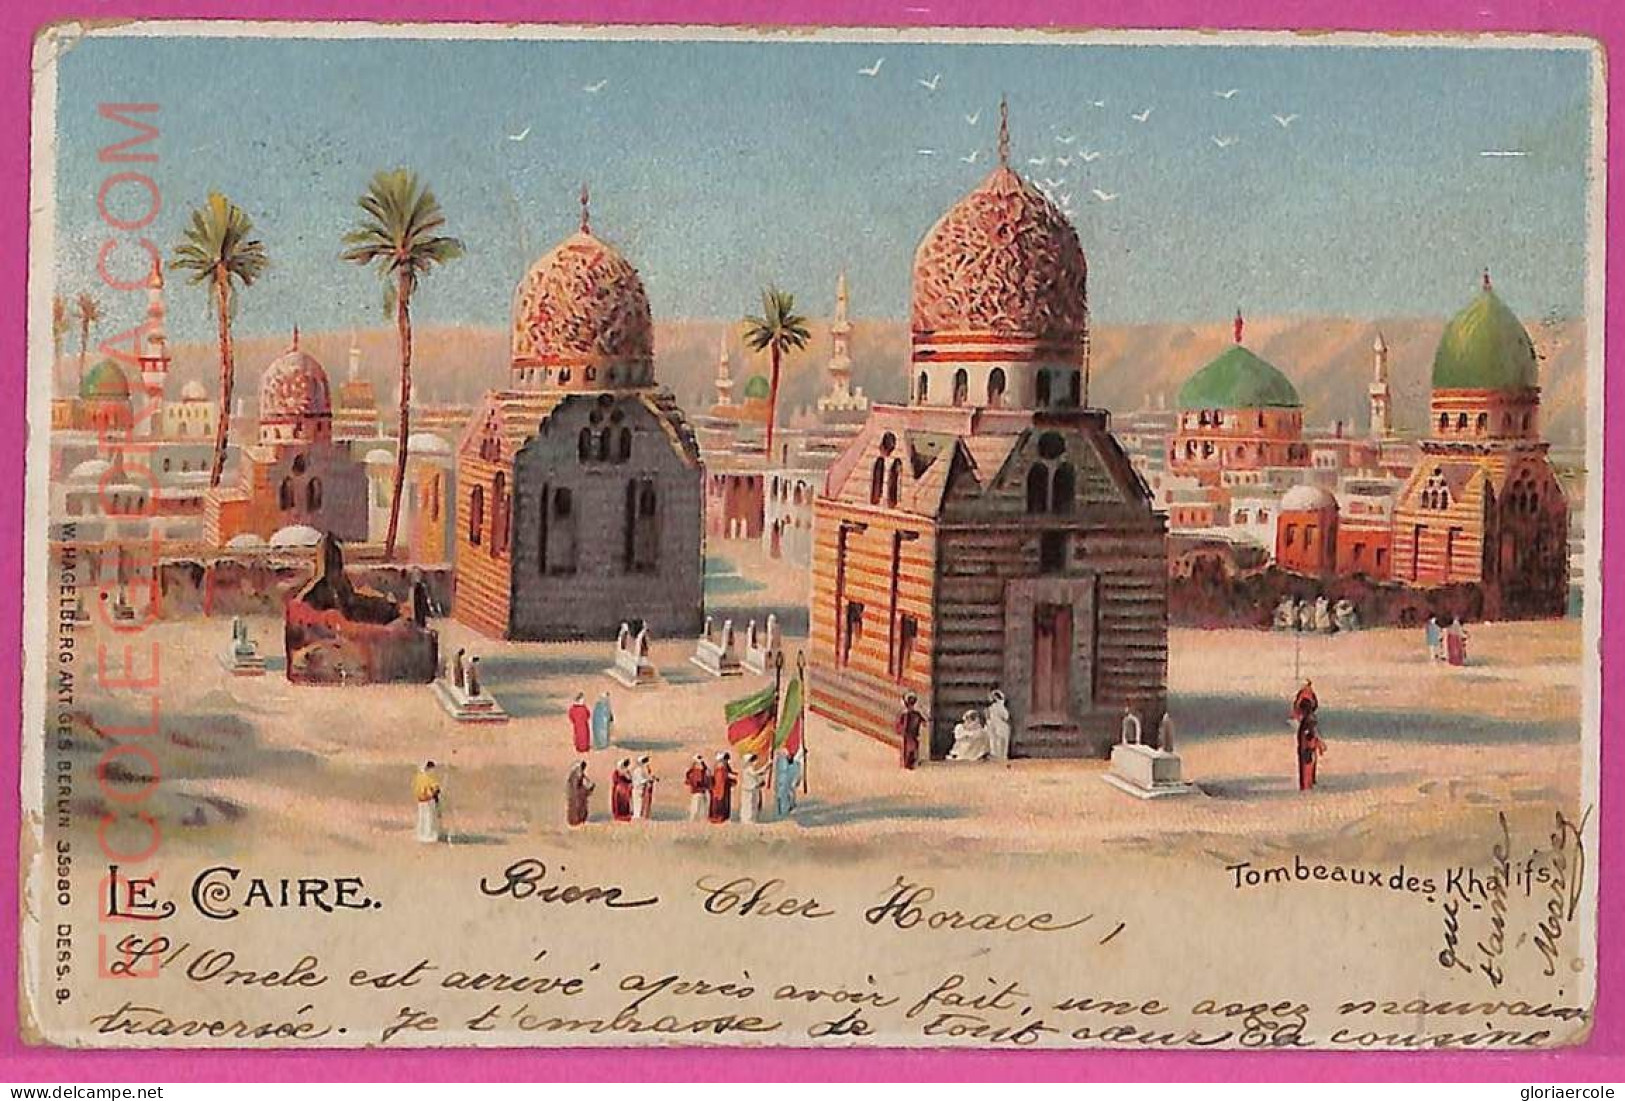 Ag3025 - EGYPT - VINTAGE POSTCARD - Cairo - 1903 - Le Caire